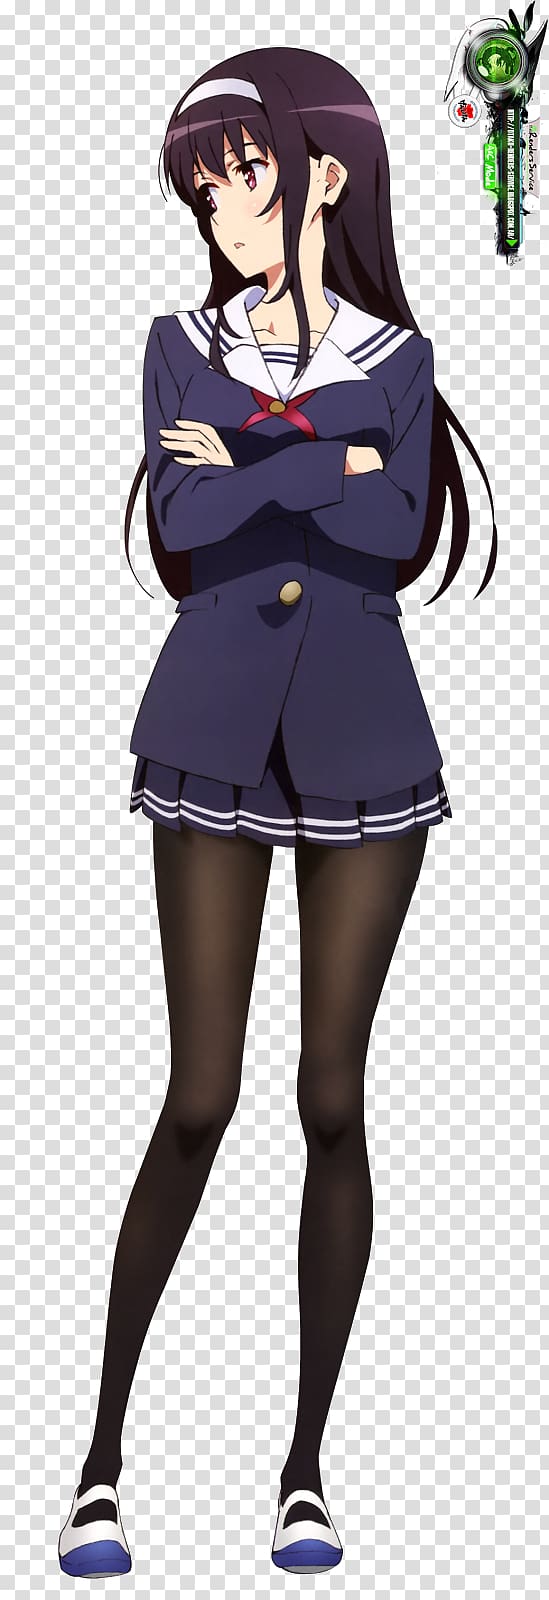 Black hair Uniform Mangaka Brown hair Homo sapiens, Anime transparent background PNG clipart